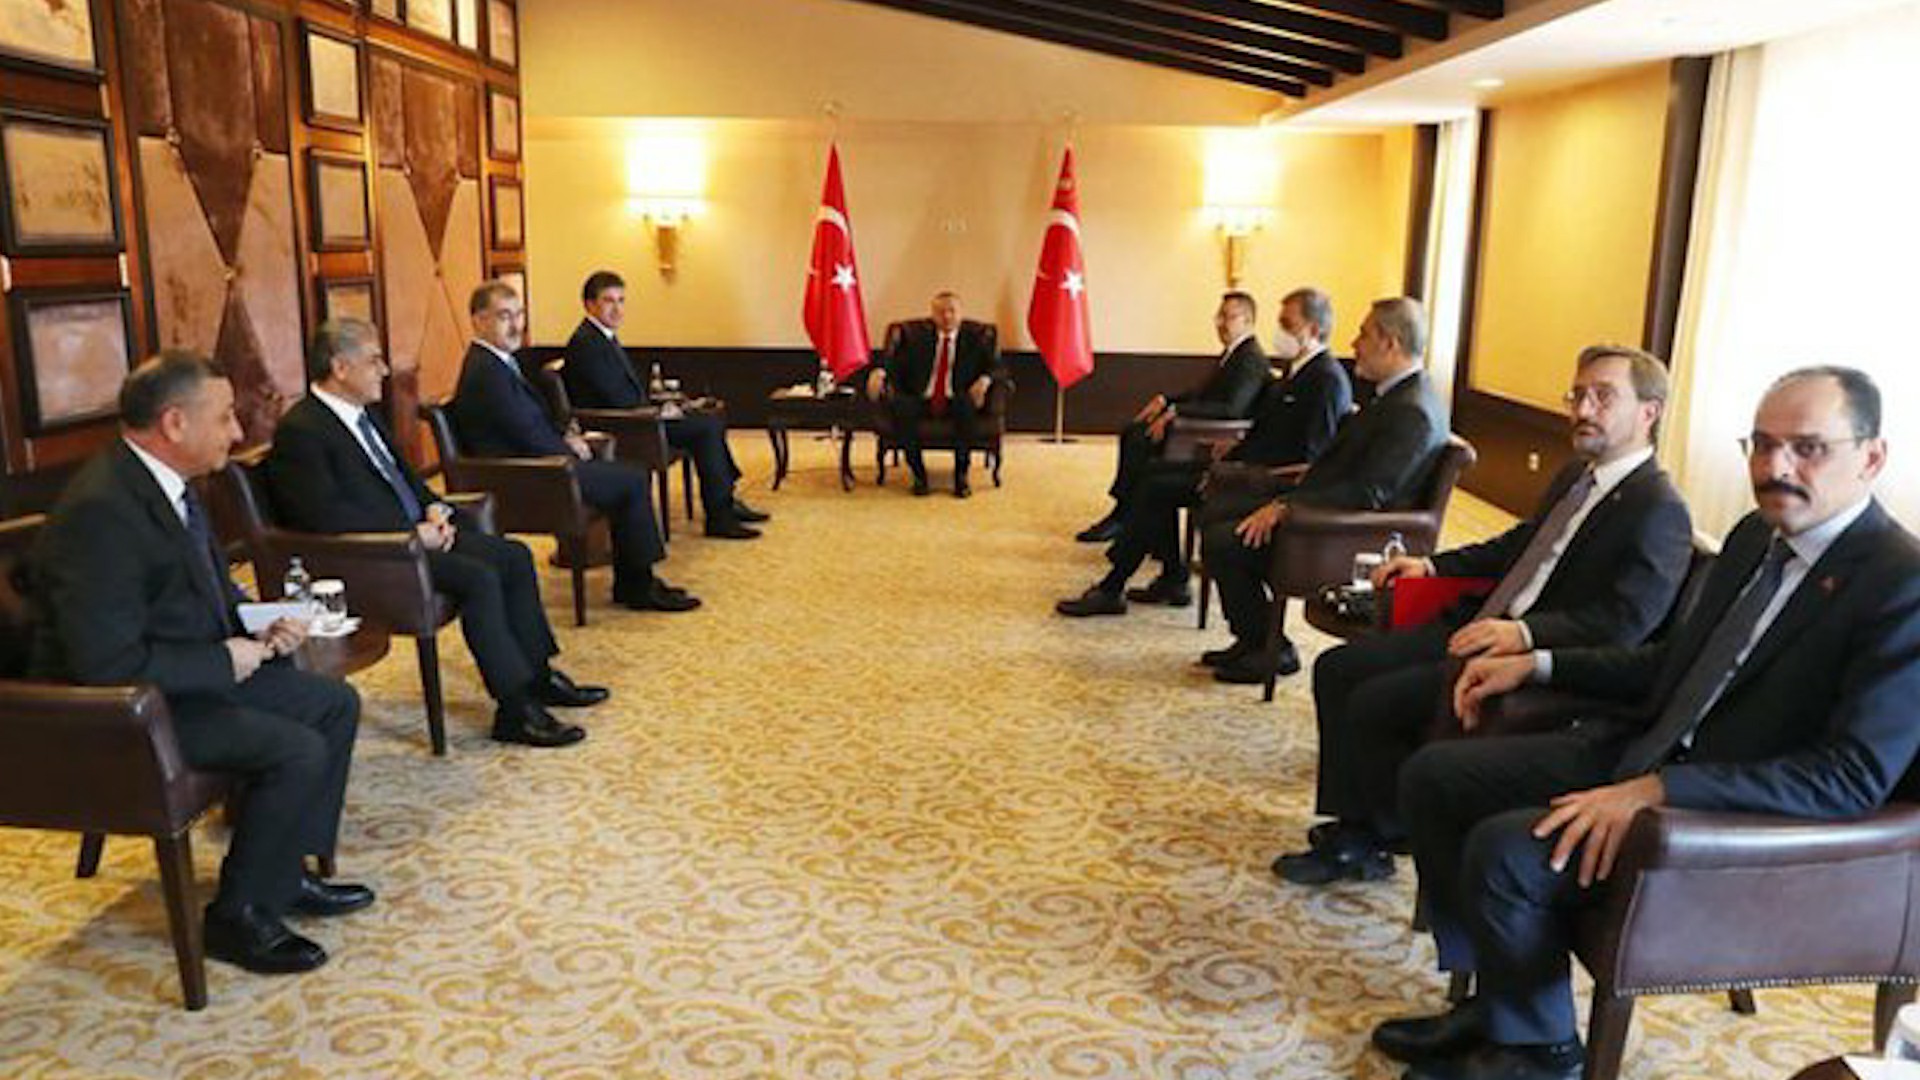  Journalist Altan evaluates Erdogan and Barzani's meeting, effect of war in Ukraine on Kurdistan